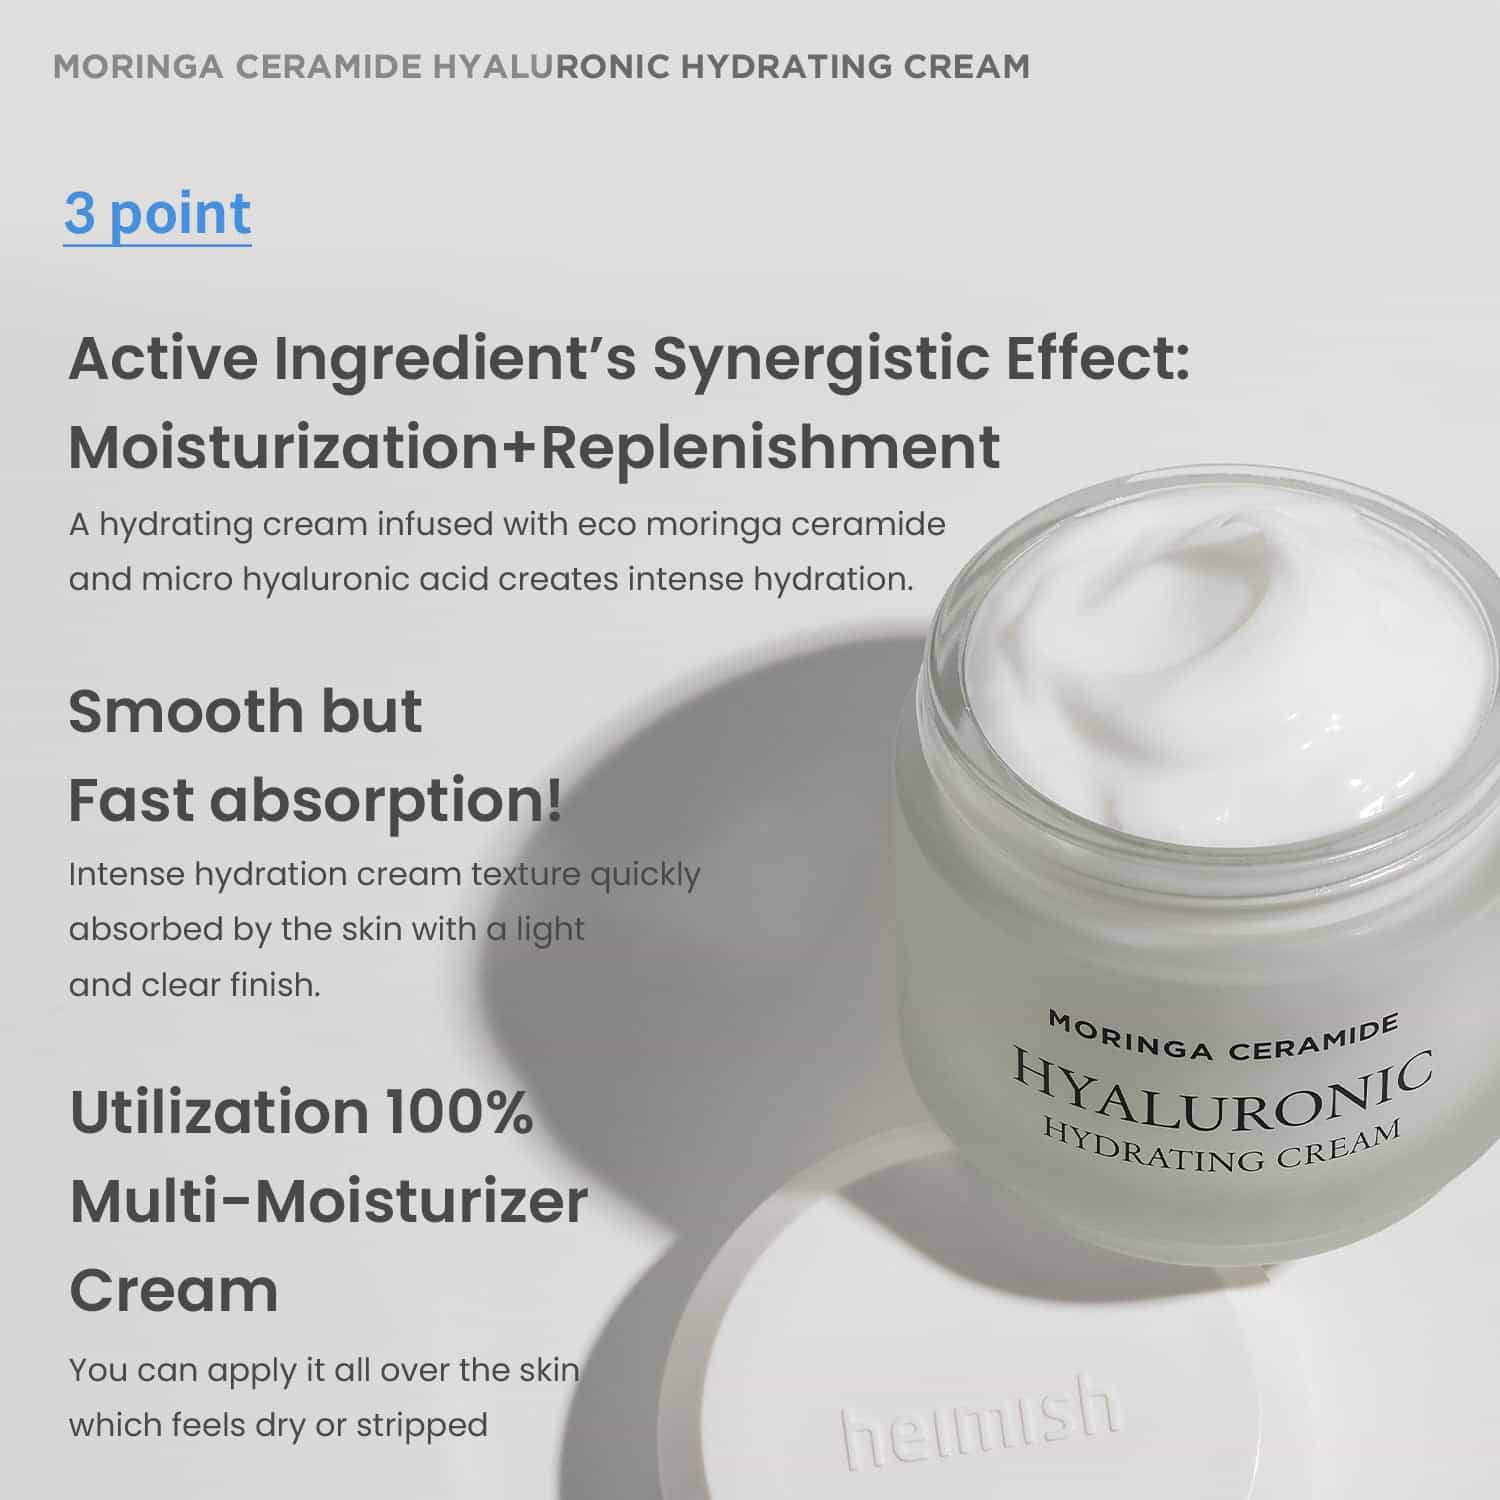 HEIMISH Moringa Ceramide Hyaluronic Hydrating Cream